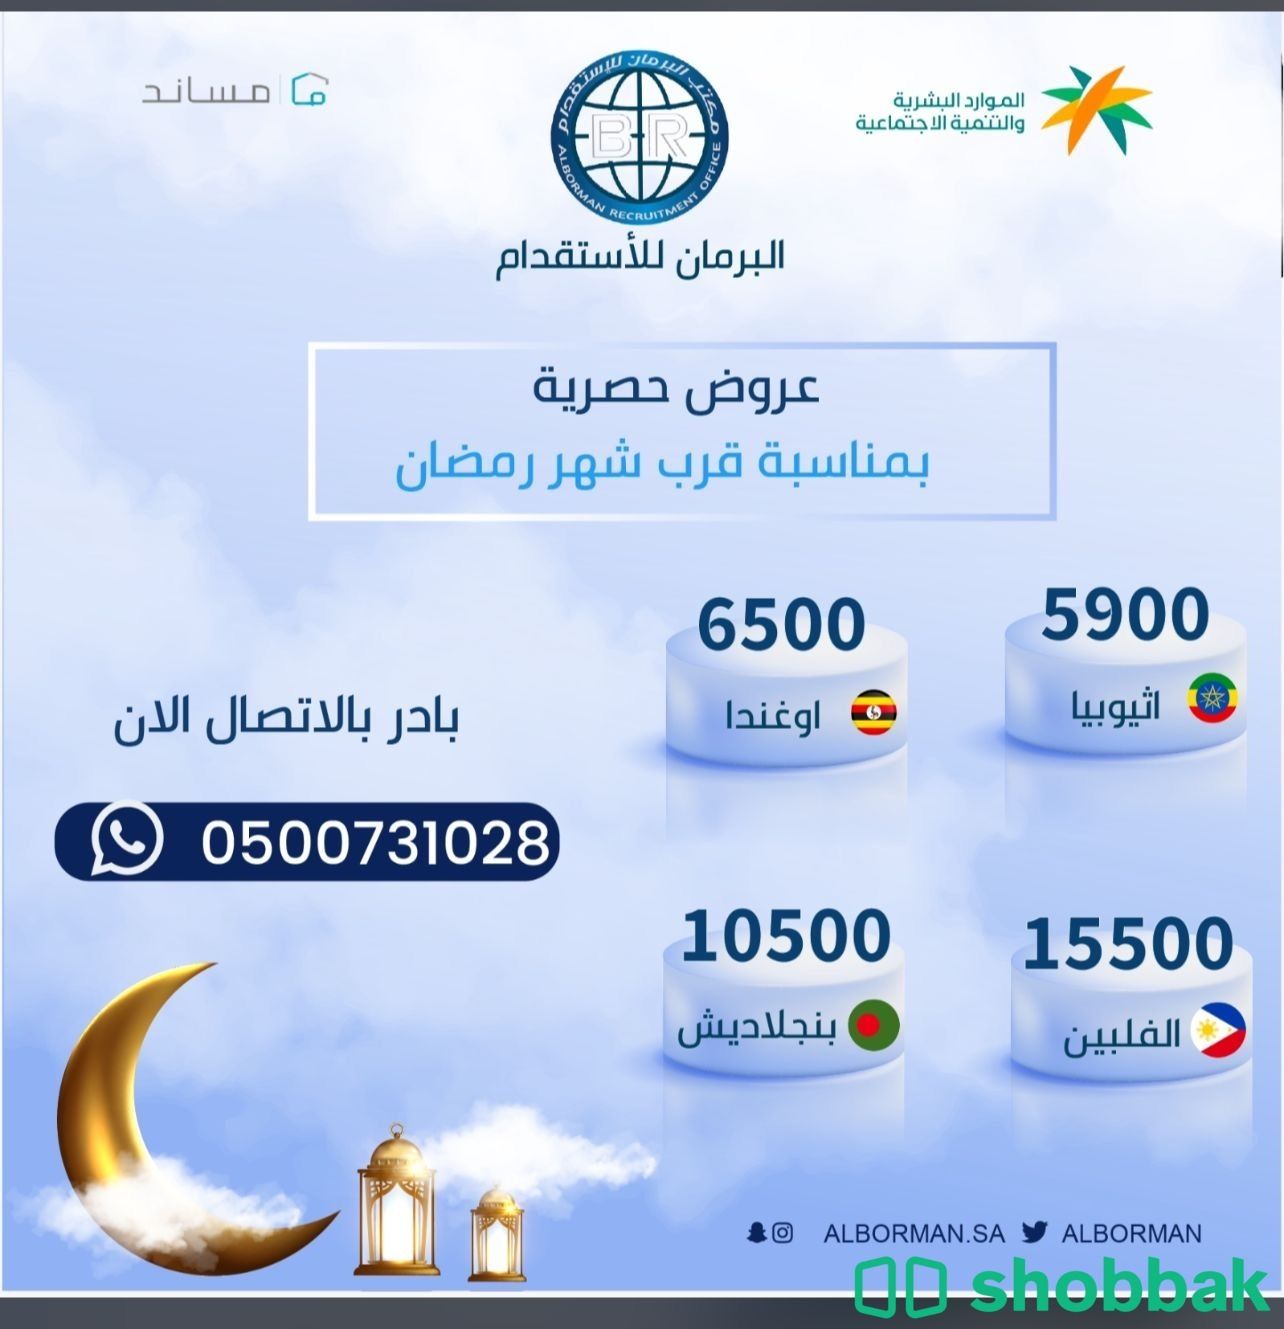 مكتب البرمان للاستقدام Shobbak Saudi Arabia